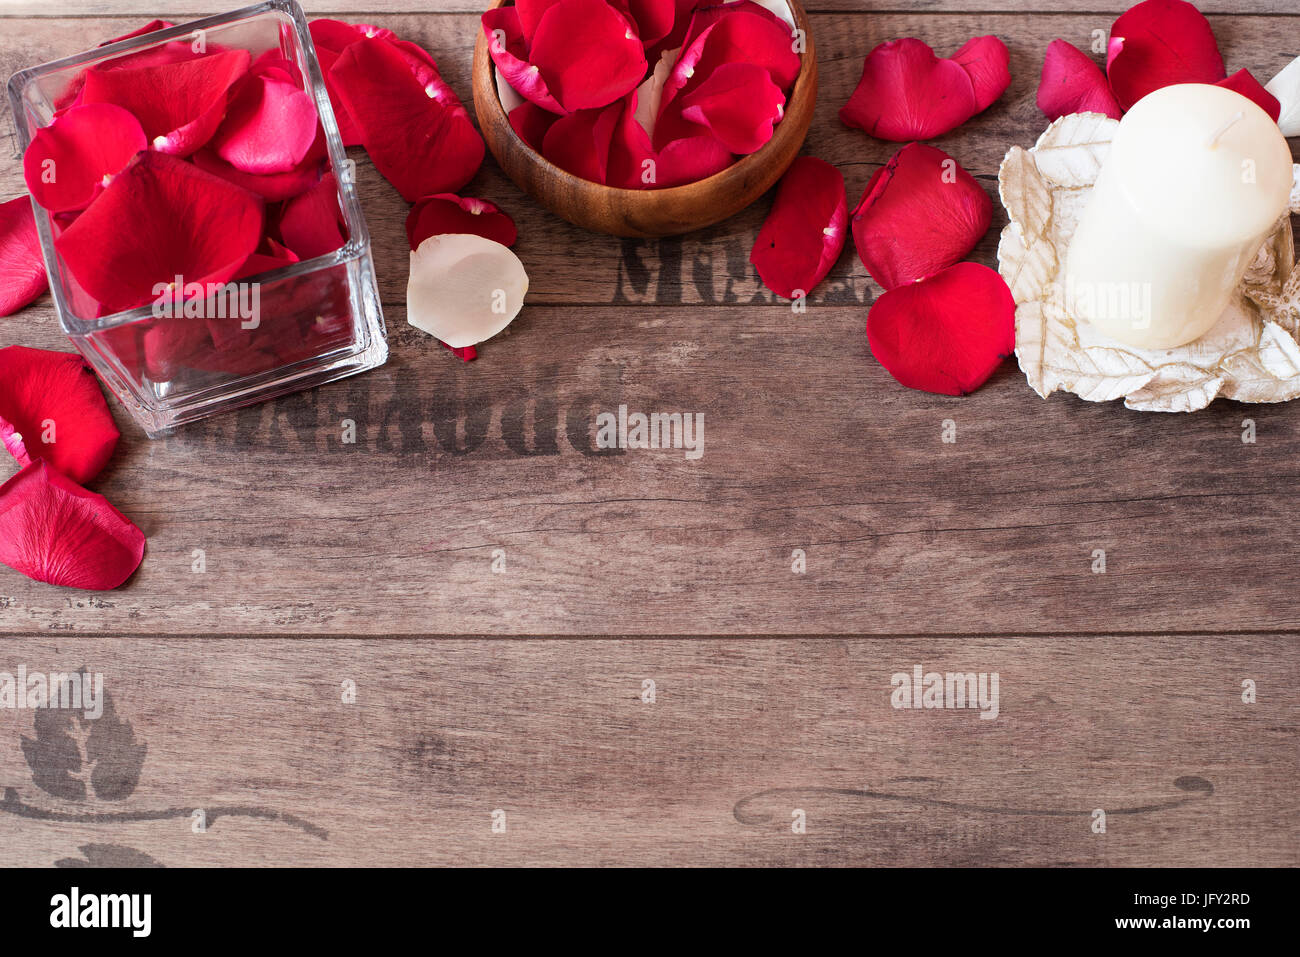 Vase en verre et bois bow remplie de pétales de rose rouge et blanc, blanc bougie vanille aromatiques. Fond de bois. Concept d'aromathérapie. Zone romantique Banque D'Images